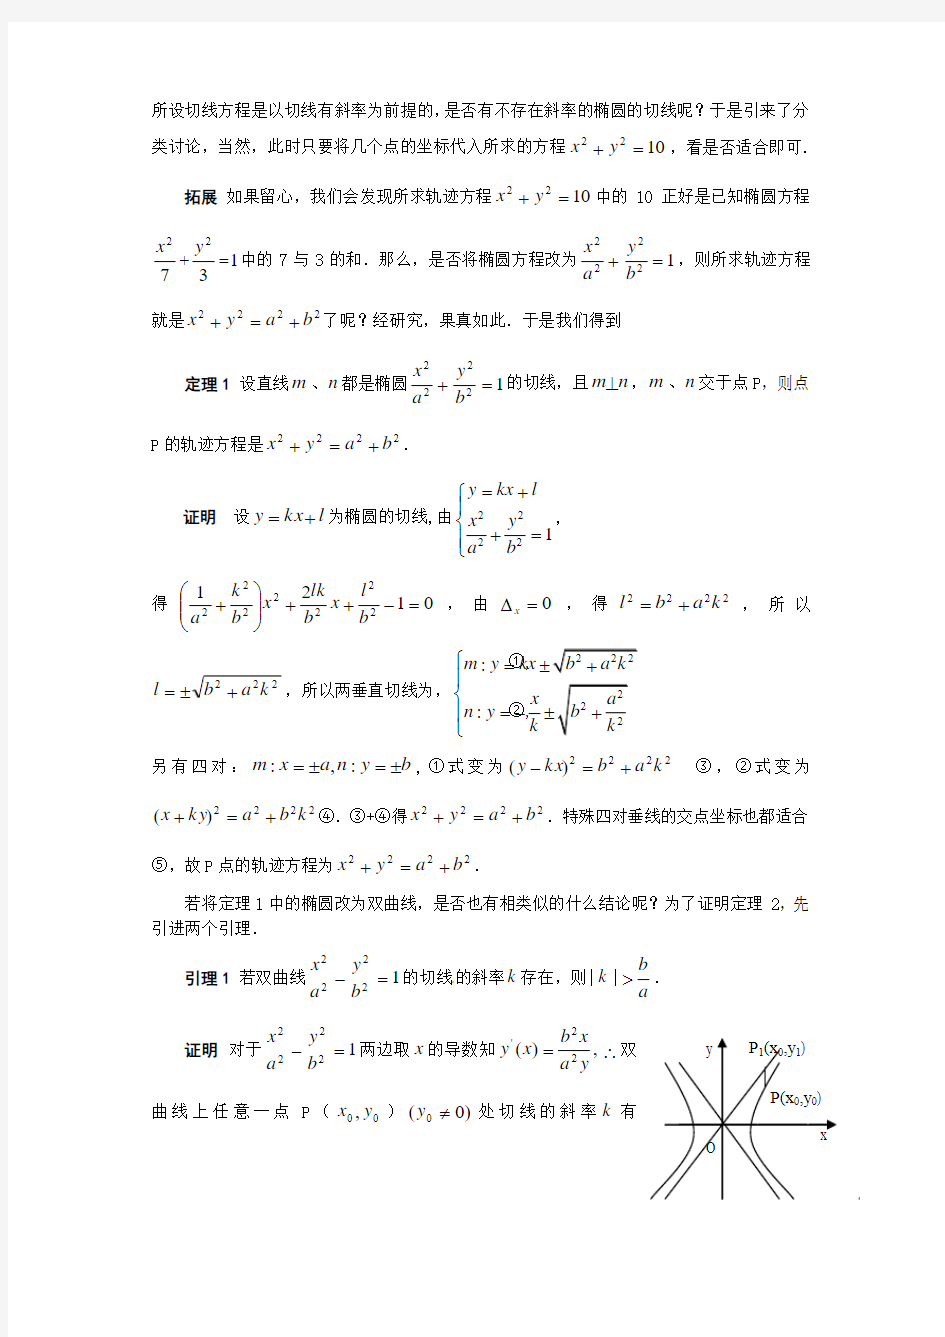 【2014】希望杯竞赛数学试题详解(61-70题)